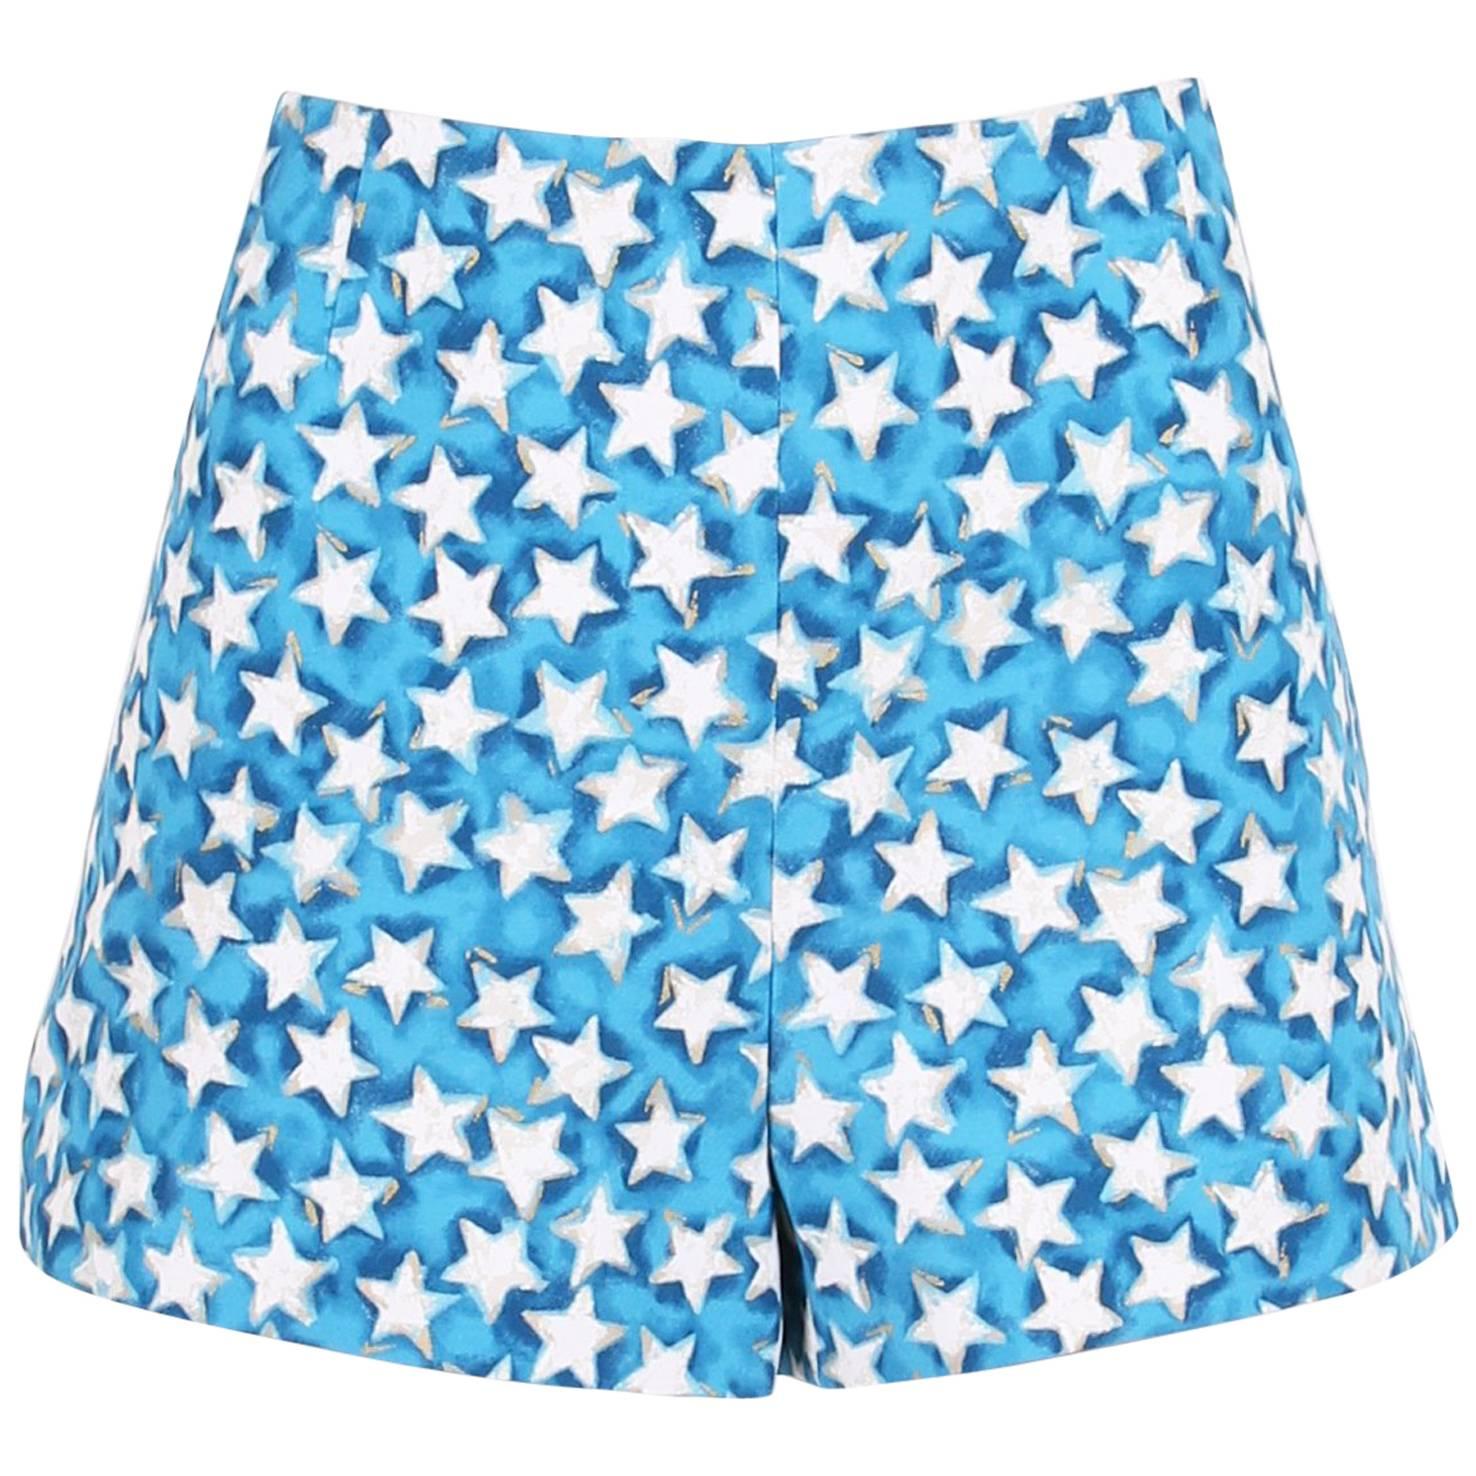 Valentino Blue White and Gold Star Print Shorts